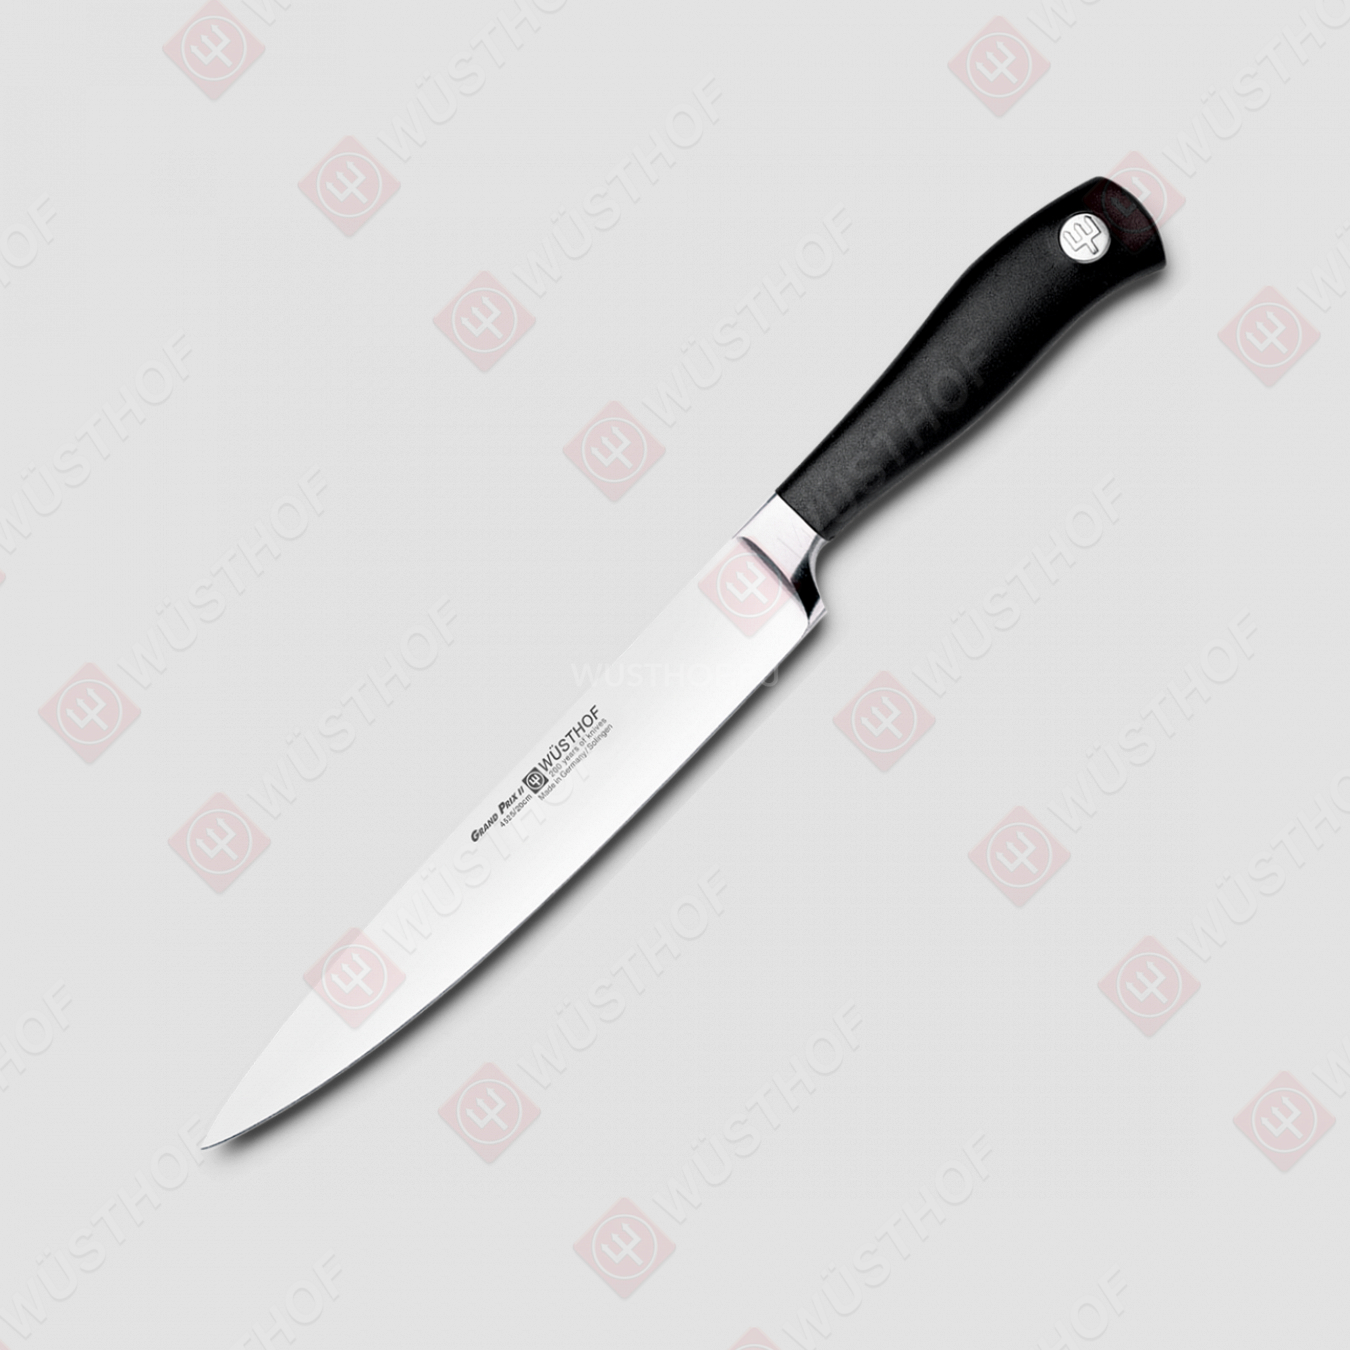 Нож кухонный для резки мяса 20 см, серия Grand Prix II, WUESTHOF, Золинген, Германия